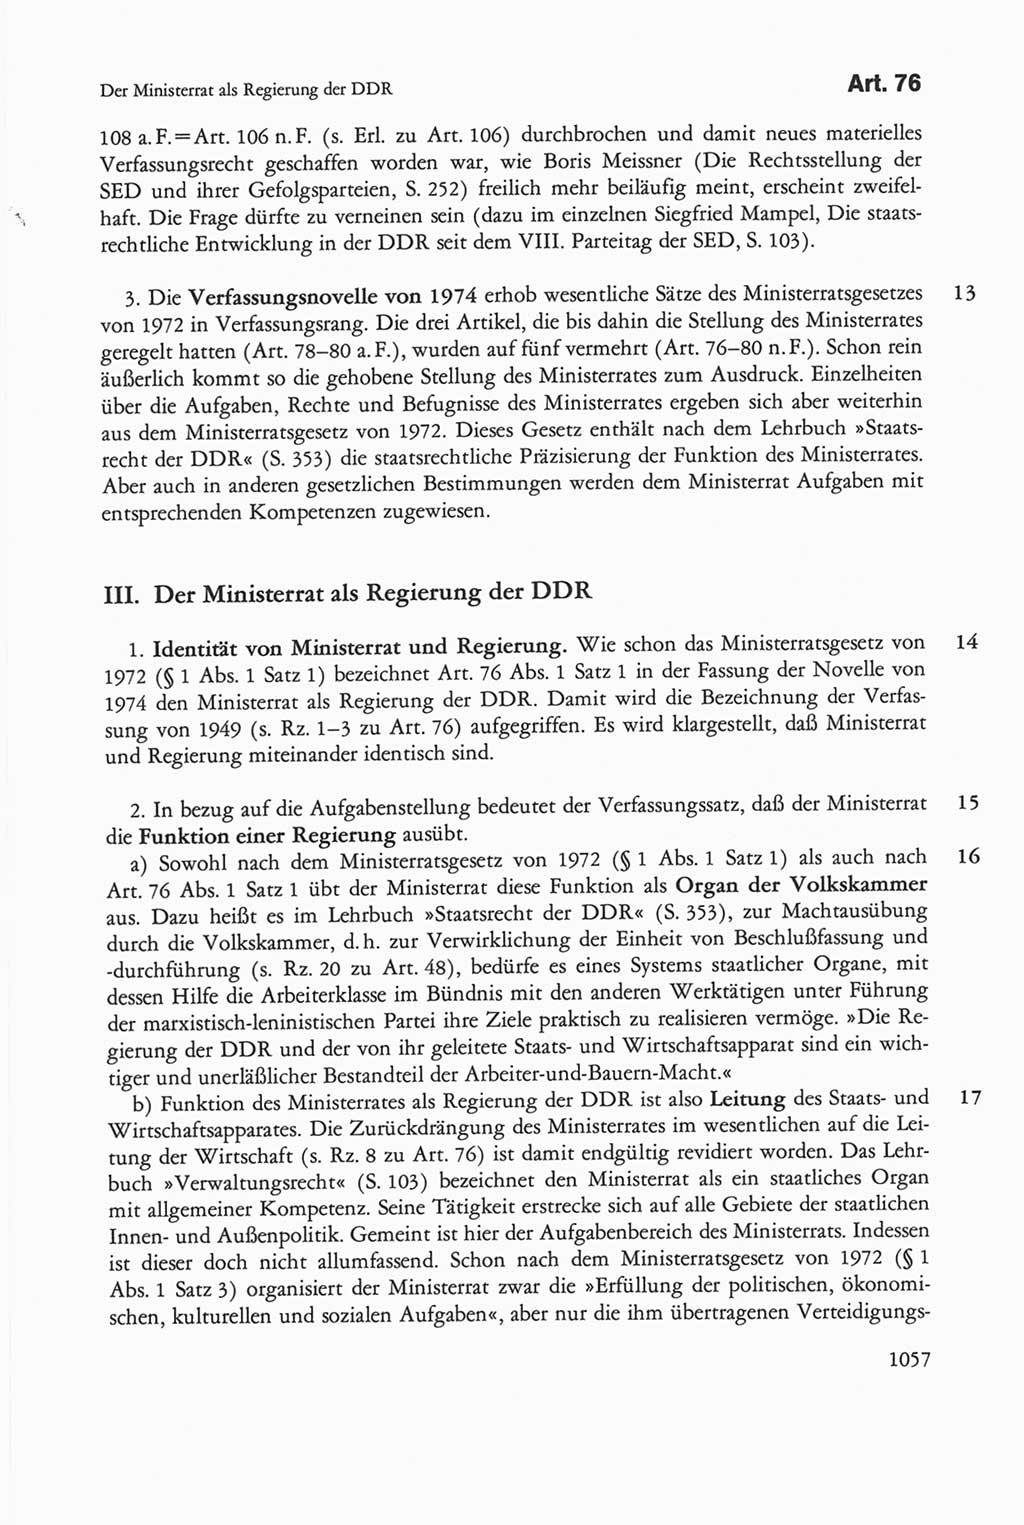 Die sozialistische Verfassung der Deutschen Demokratischen Republik (DDR), Kommentar mit einem Nachtrag 1997, Seite 1057 (Soz. Verf. DDR Komm. Nachtr. 1997, S. 1057)